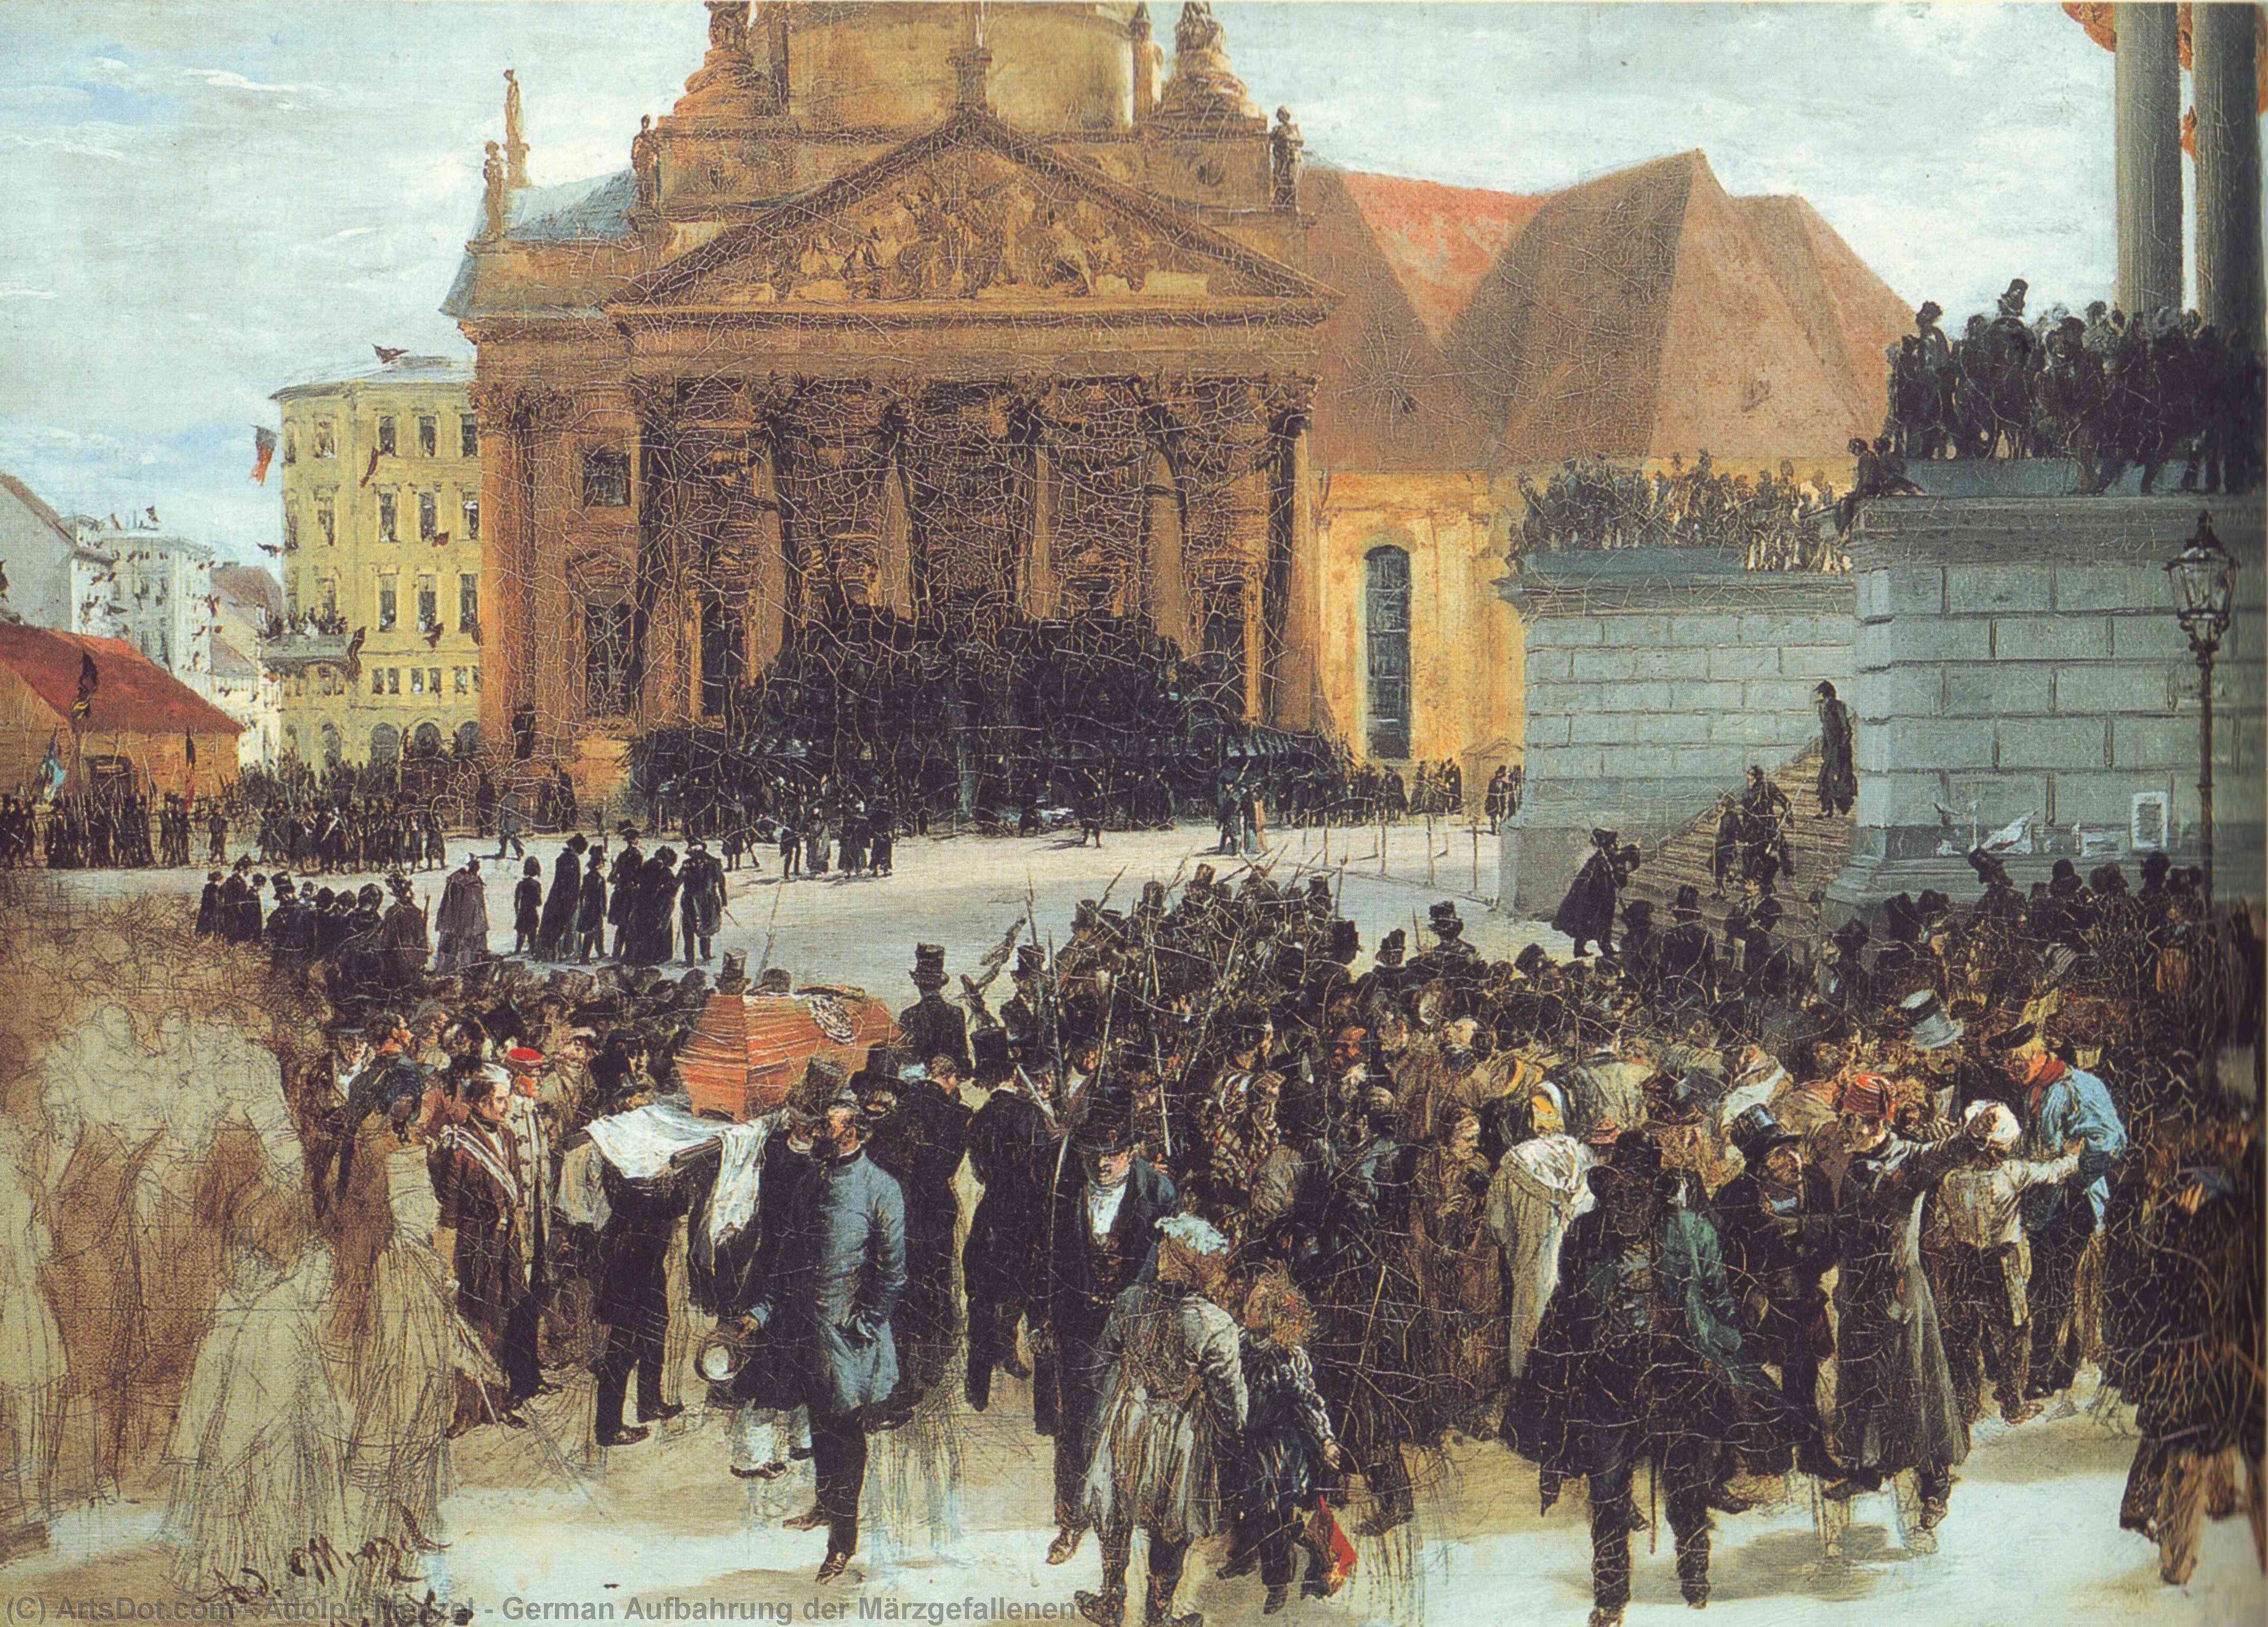 WikiOO.org - Encyclopedia of Fine Arts - Maleri, Artwork Adolph Menzel - German Aufbahrung der Märzgefallenen